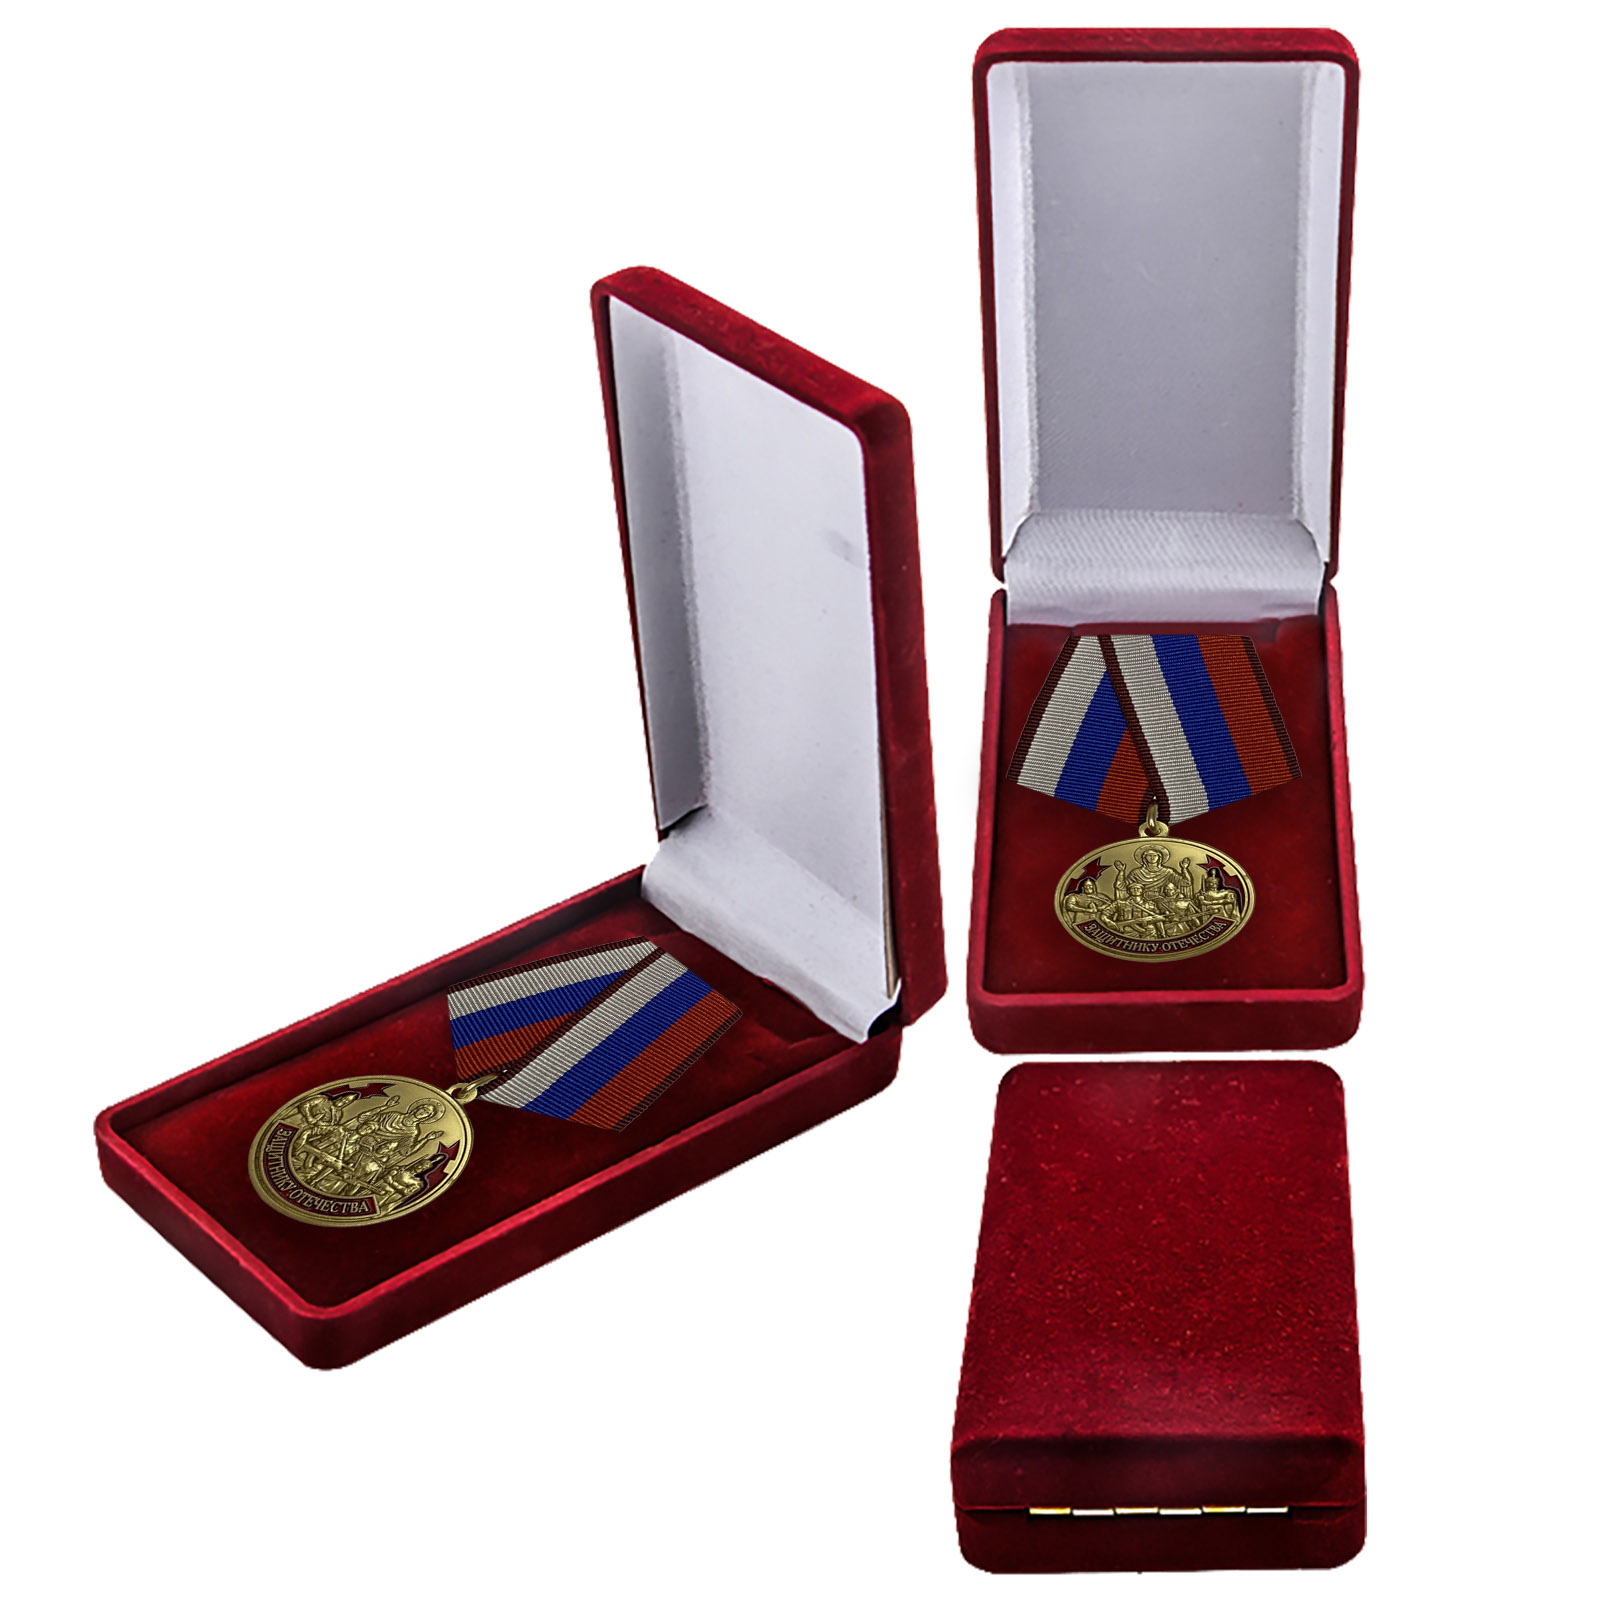 Купить наградную медаль Защитнику Отечества 23 февраля оптом или в розницу